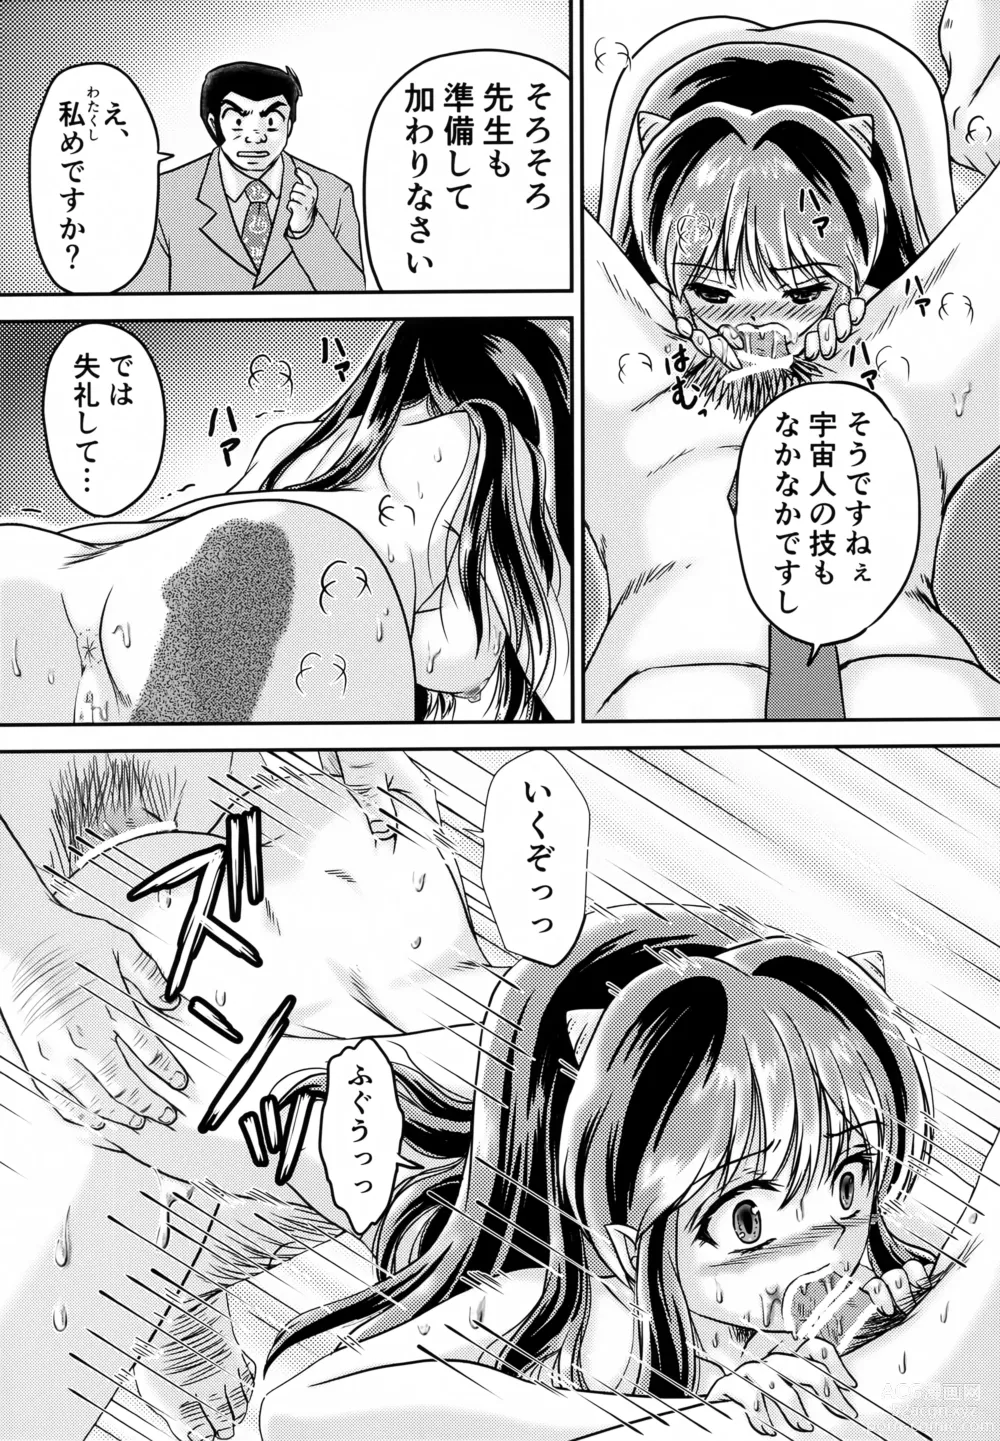 Page 5 of doujinshi Oni no Chiru Ramu